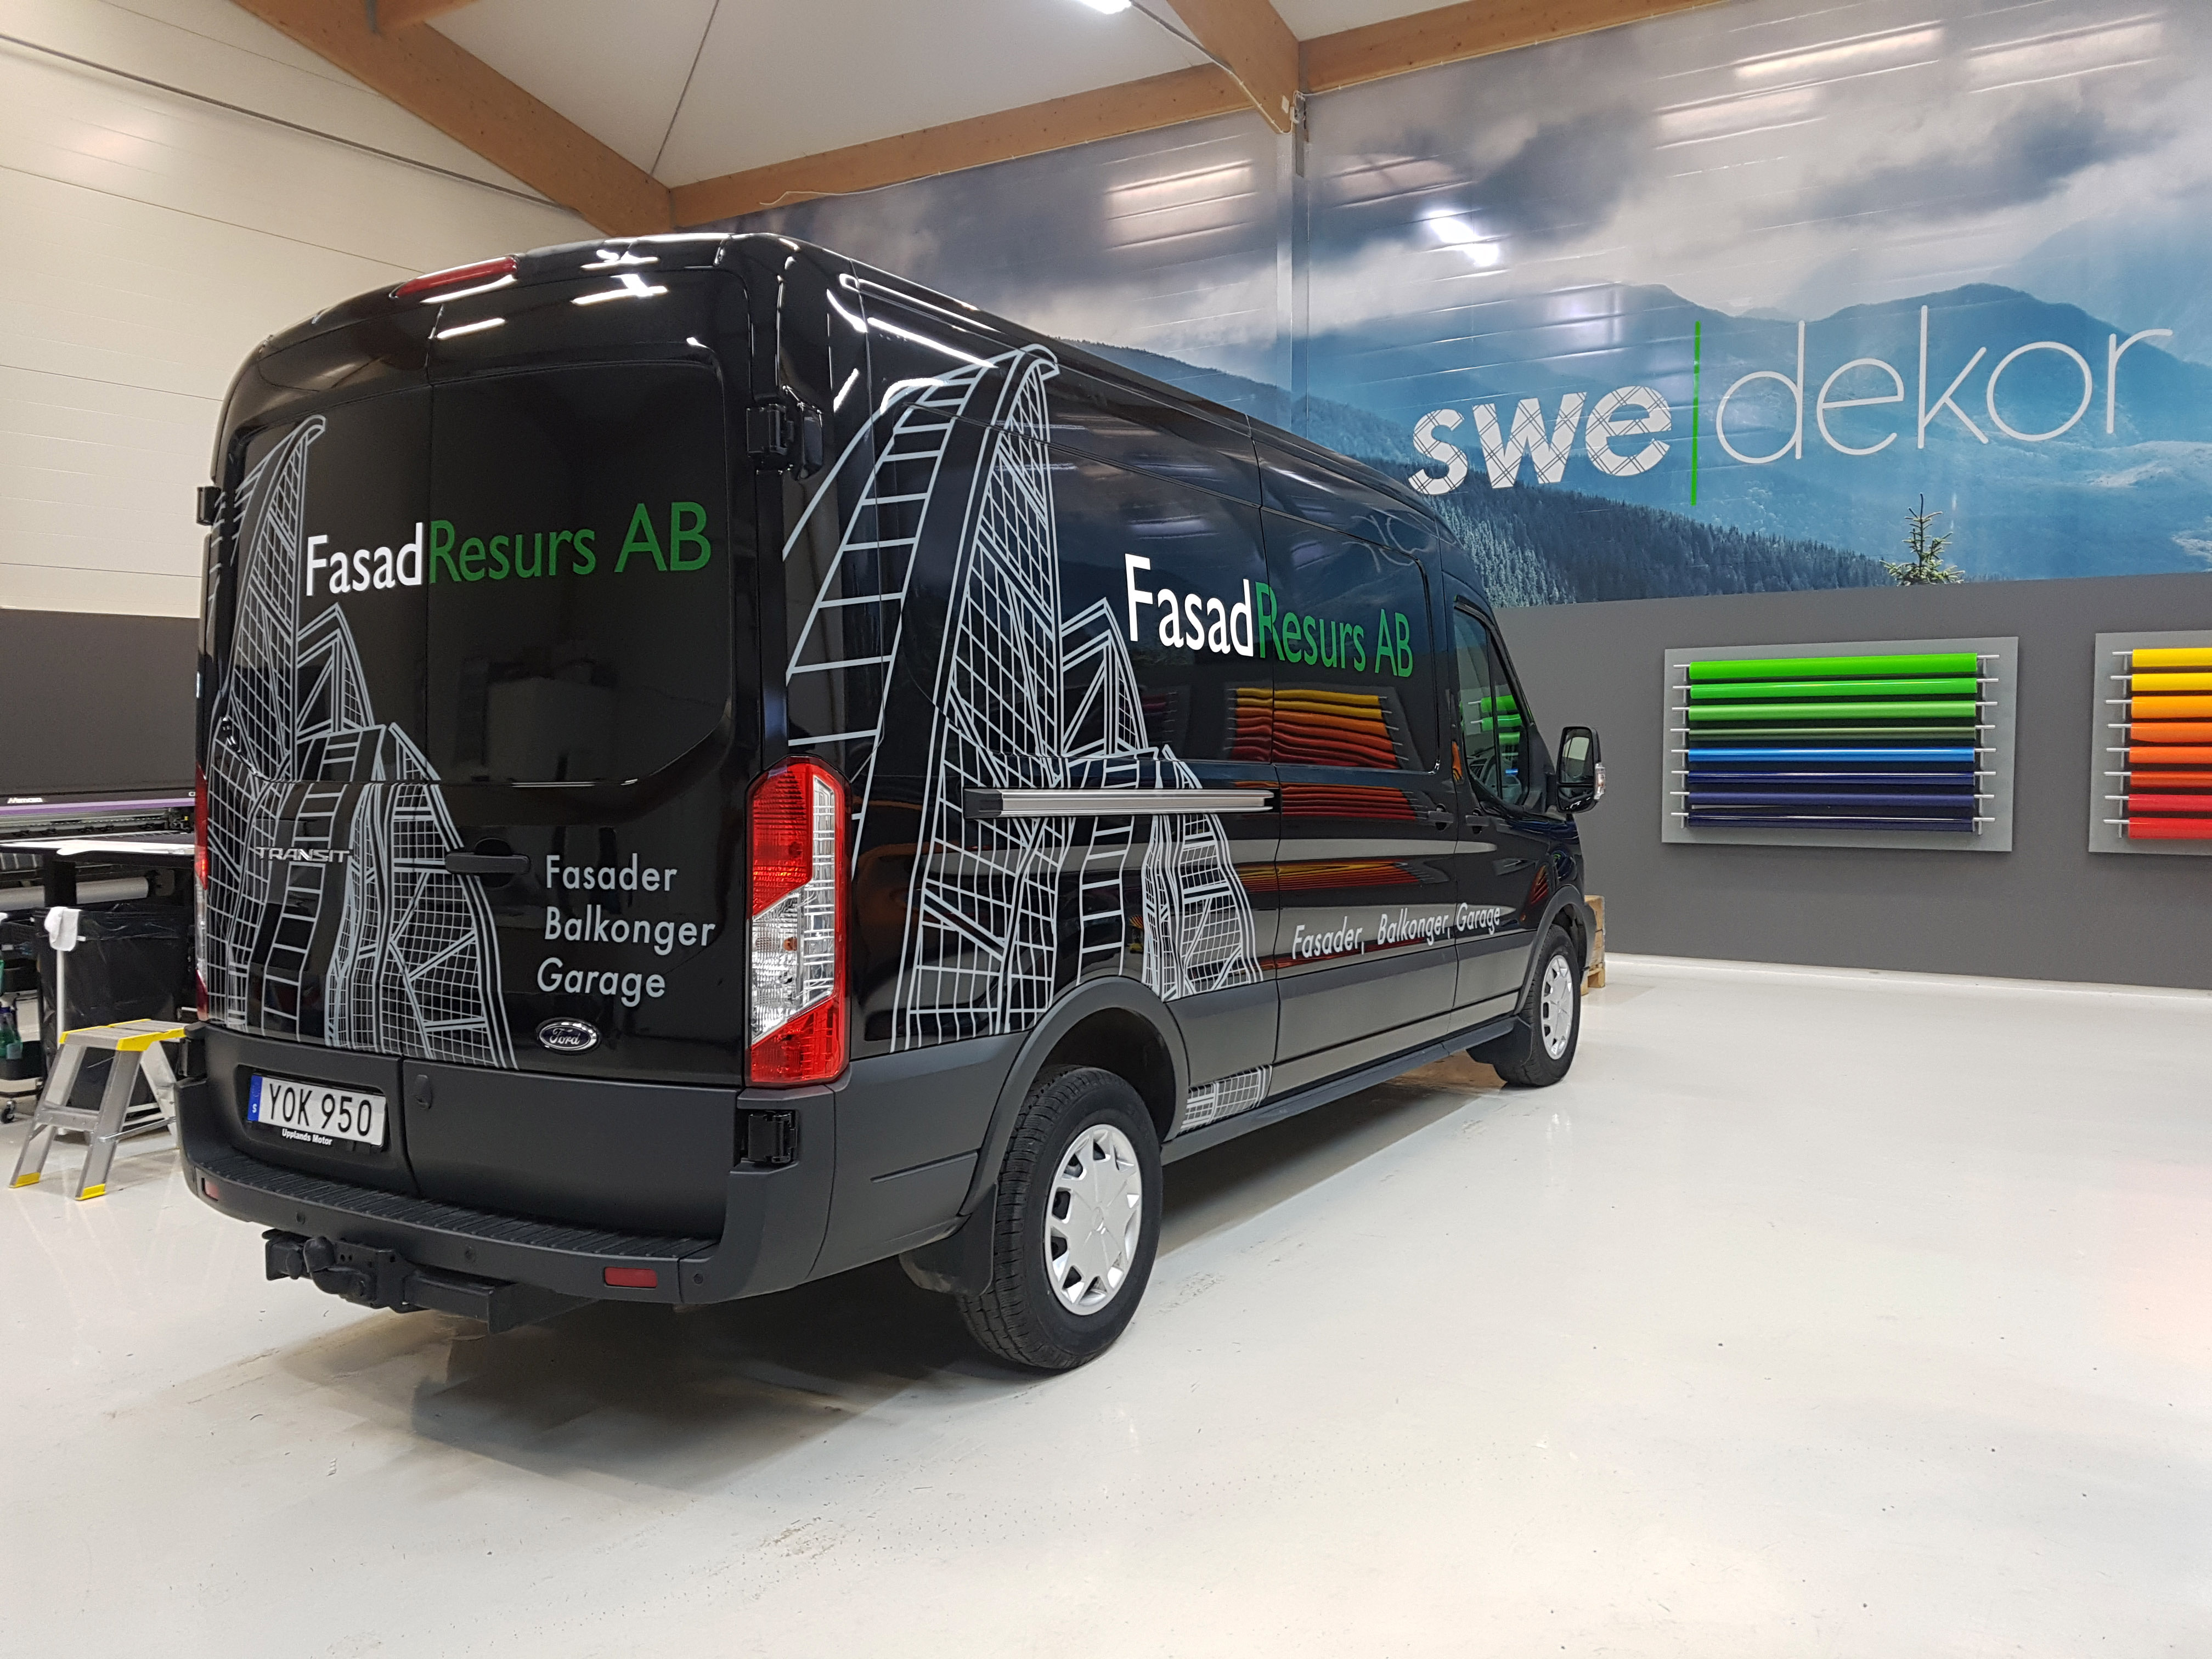 Skuren dekorfolie monterat på en Ford Transit av Swedekor